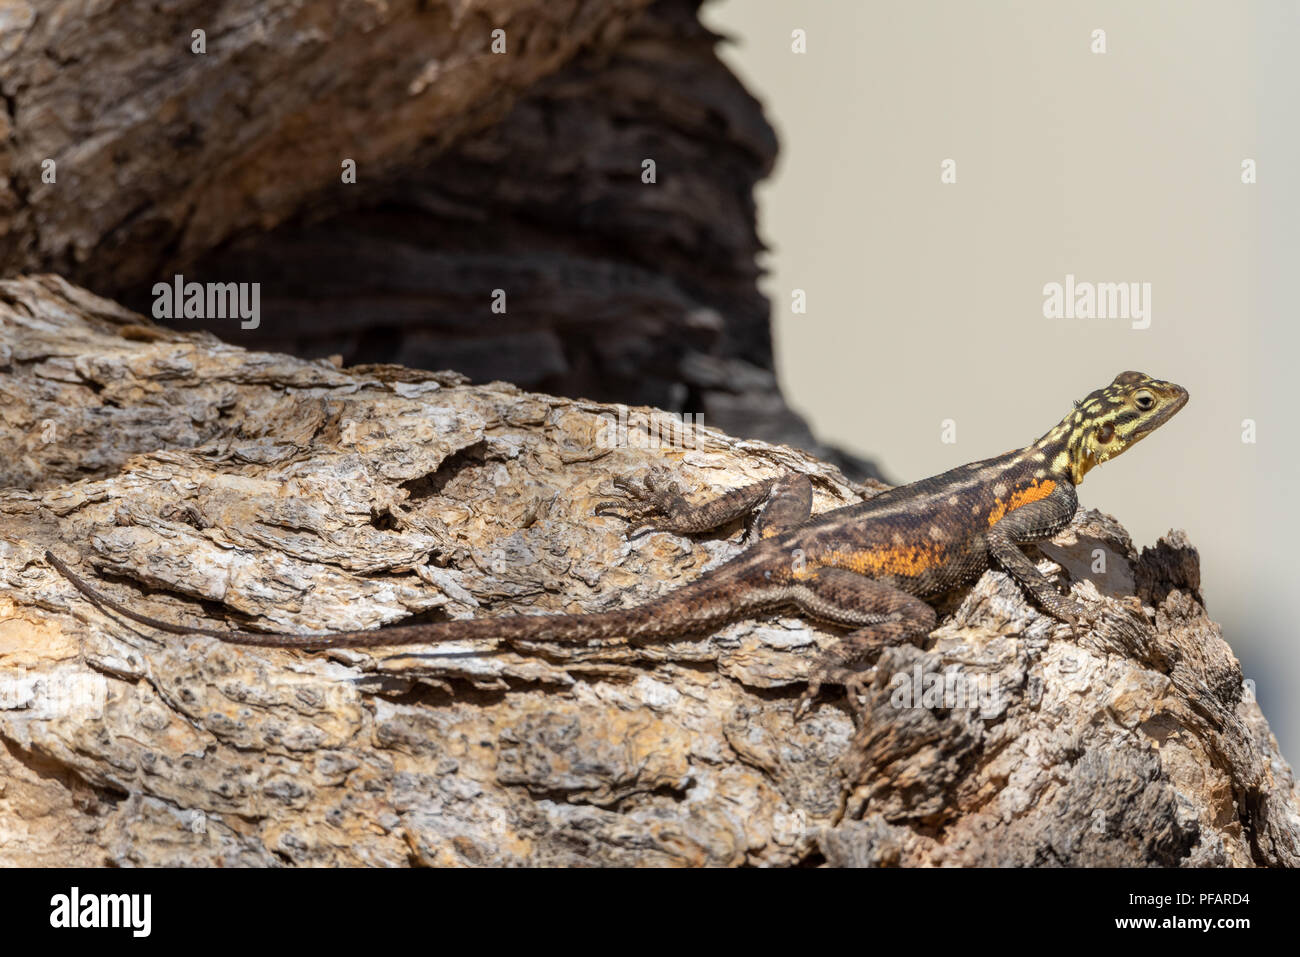 Sehr bunt Namibian rock Agama, Echse Reptil, gelb und orange Körper auf einem Stein saß, Namibia Stockfoto